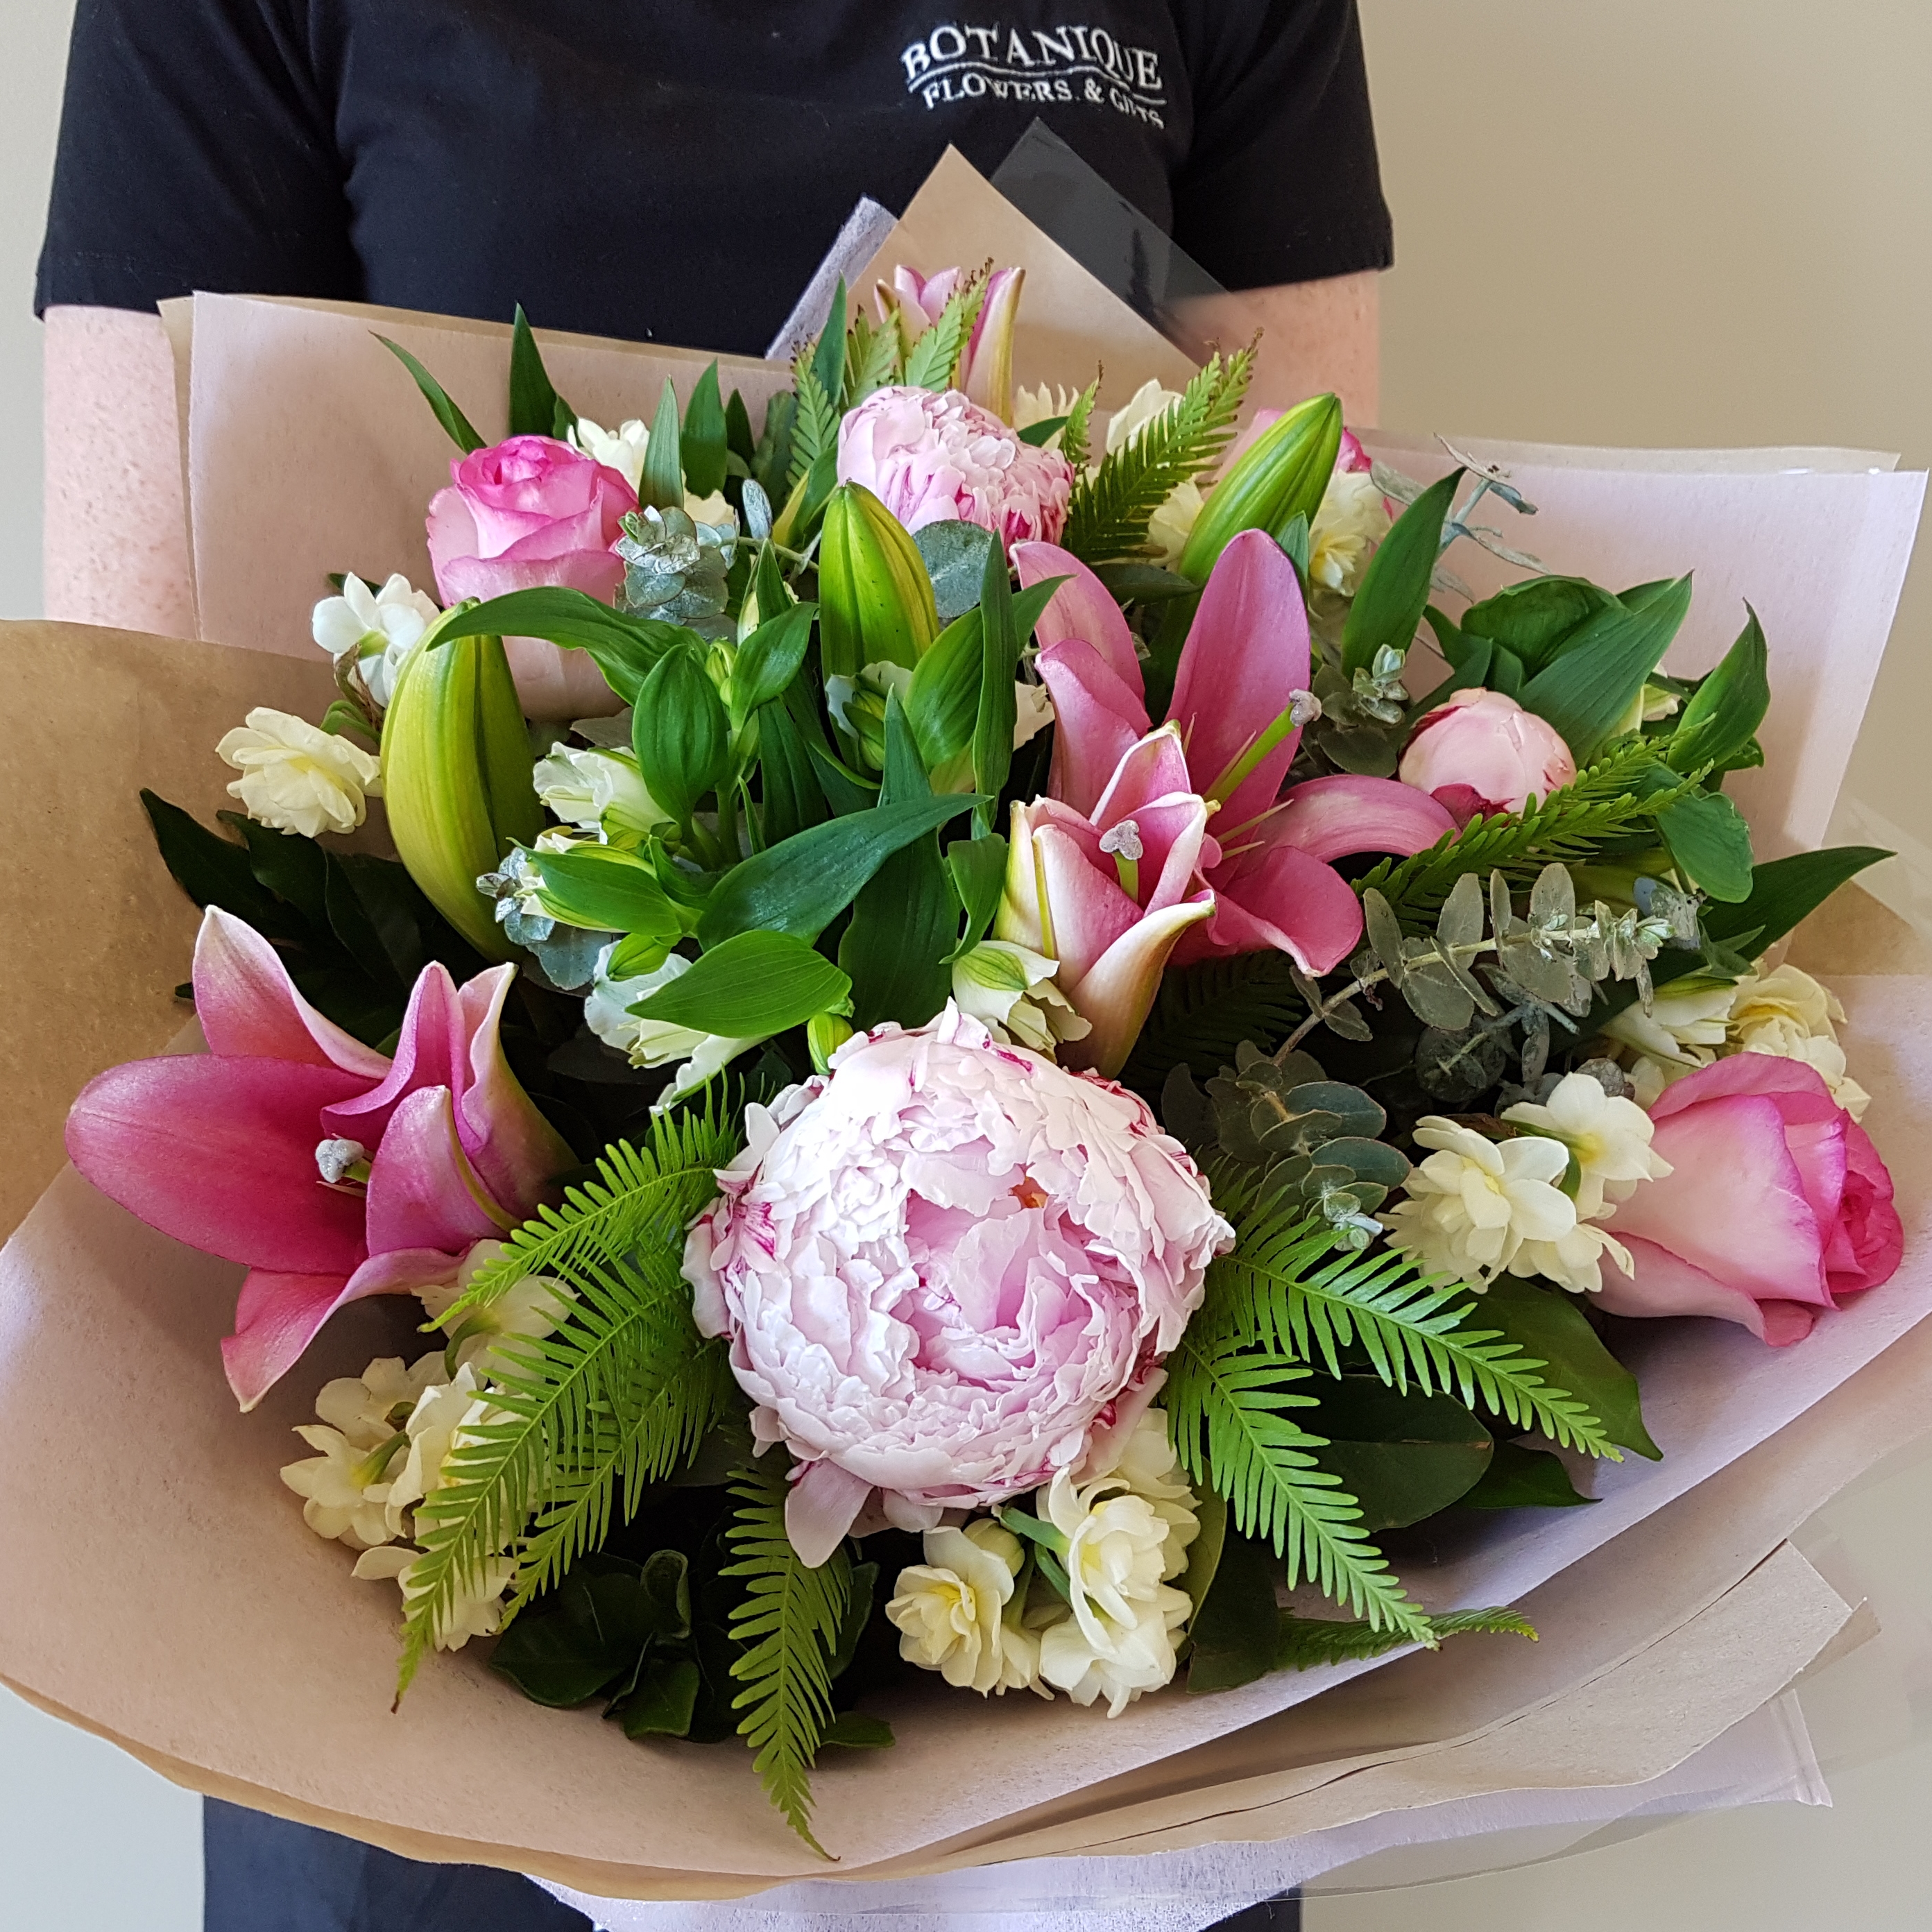 Jennifer Mixed Flower Bouquet - Botanique Florist Gold Coast Australia